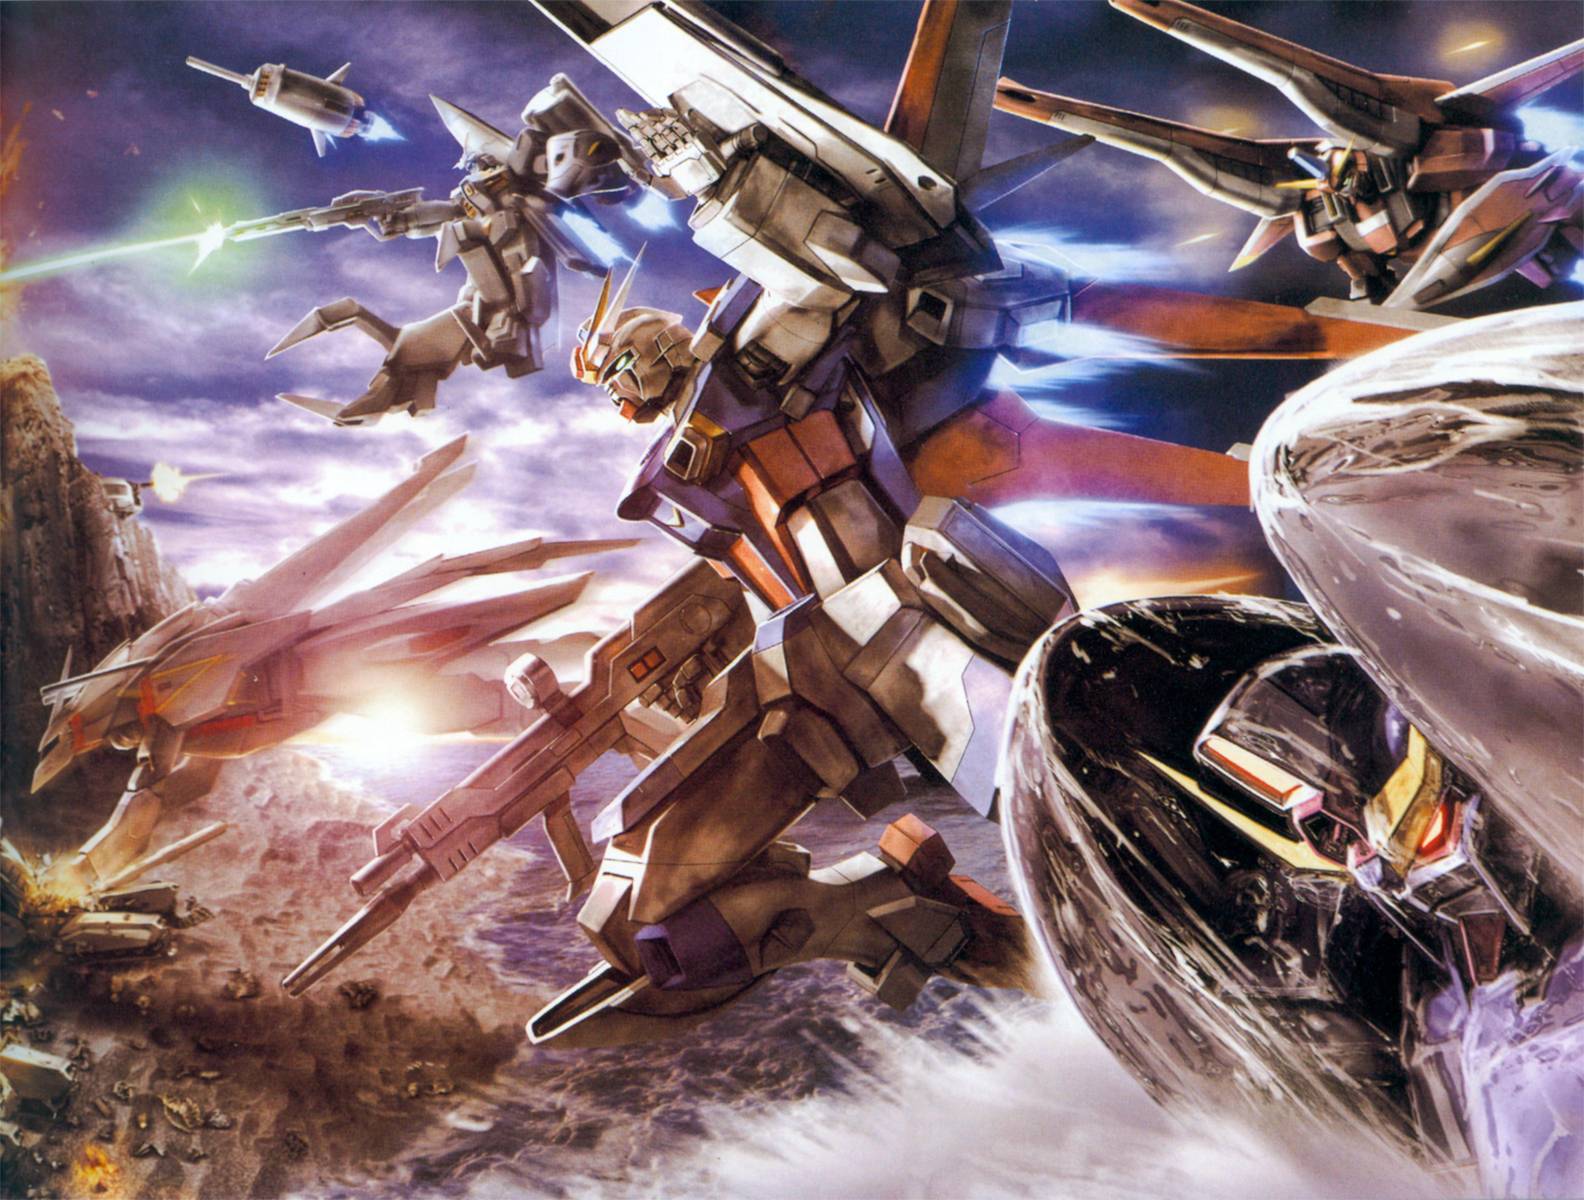 Gundam Wallpapers Top Free Gundam Backgrounds Wallpaperaccess